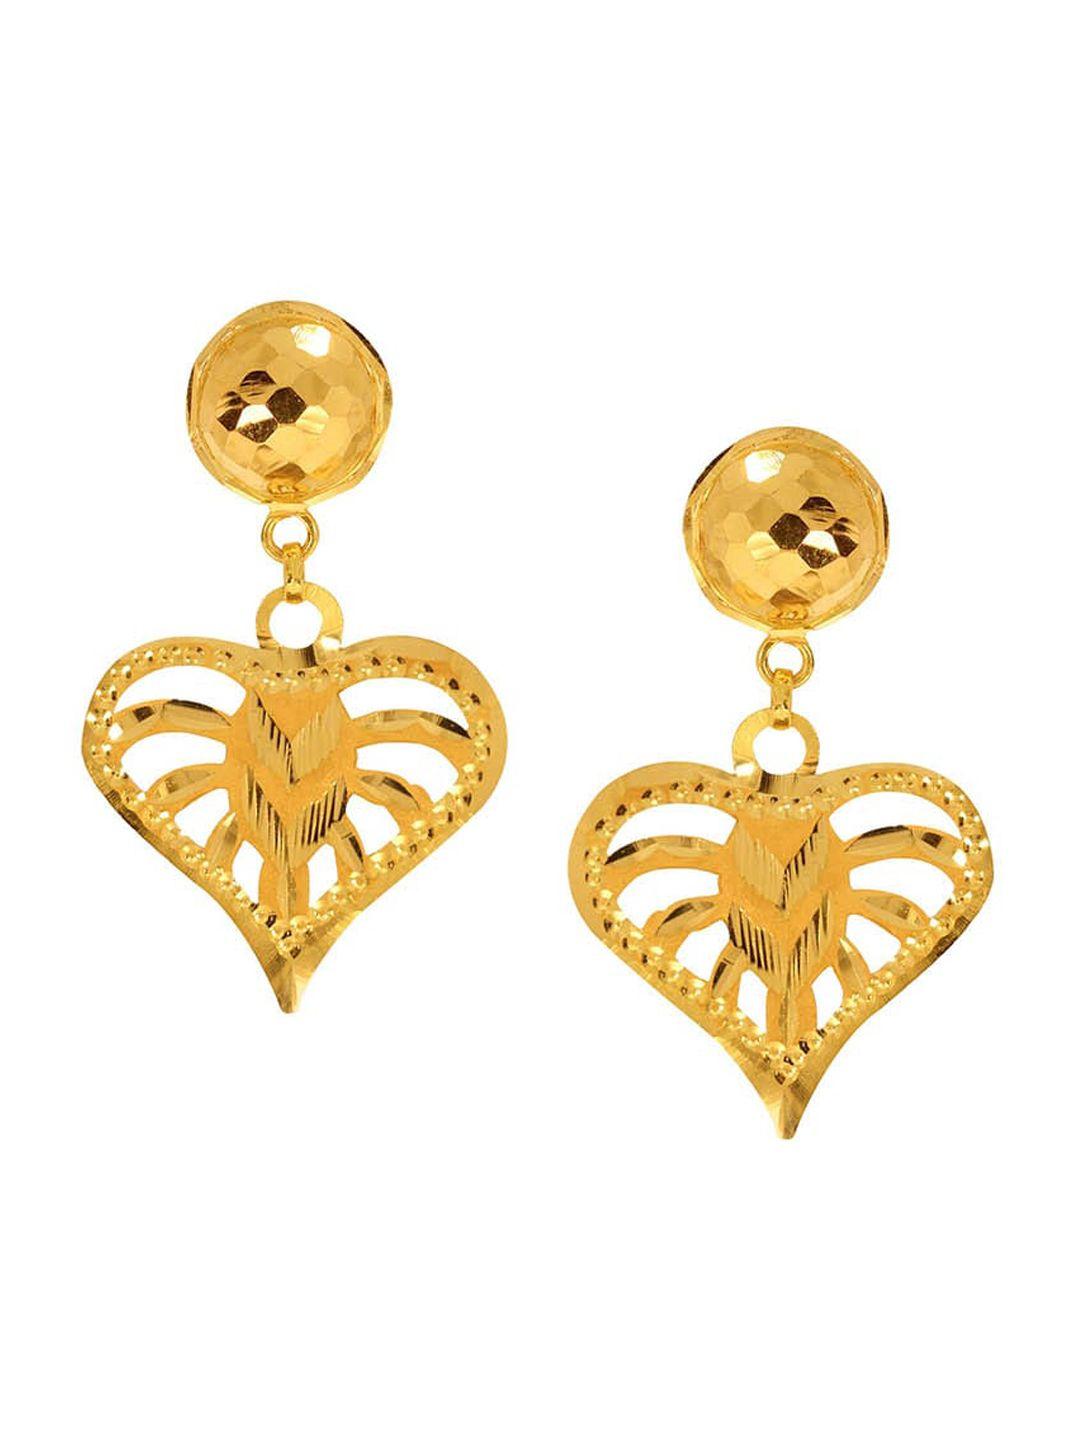 senco heart deco 22kt drop gold earrings-1.6gm